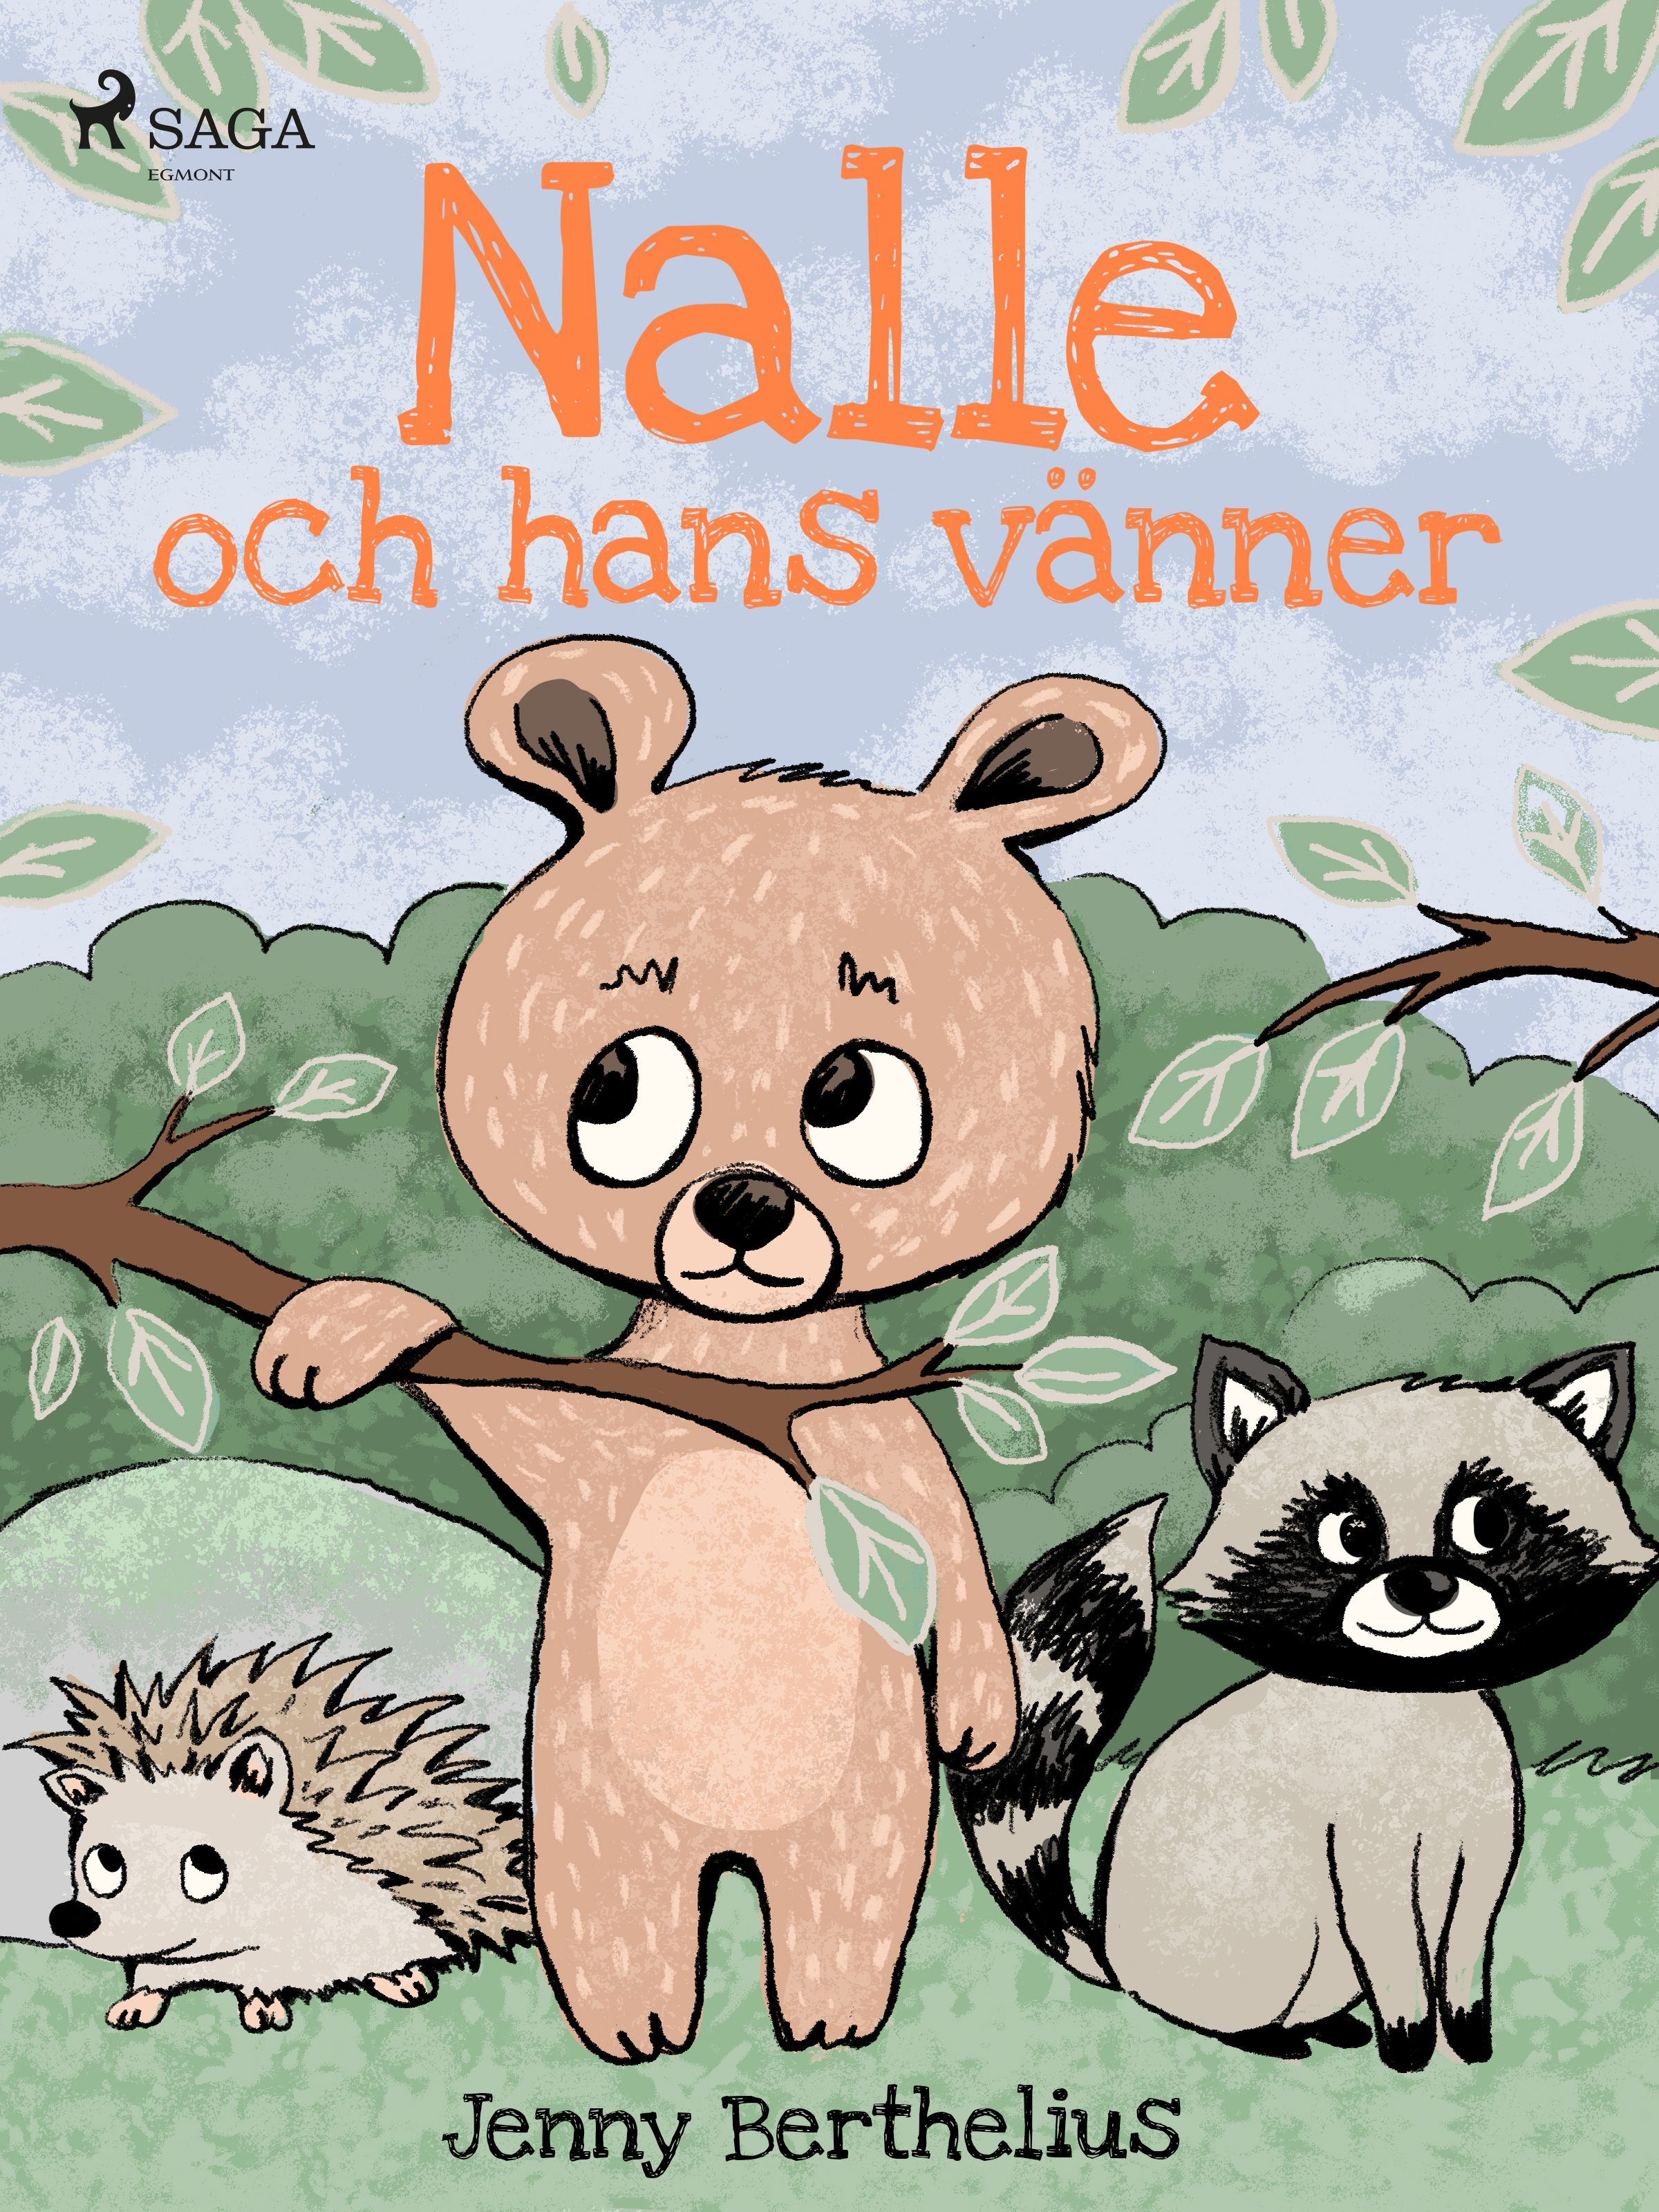 Nalle och hans vänner, e-bog af Jenny Berthelius